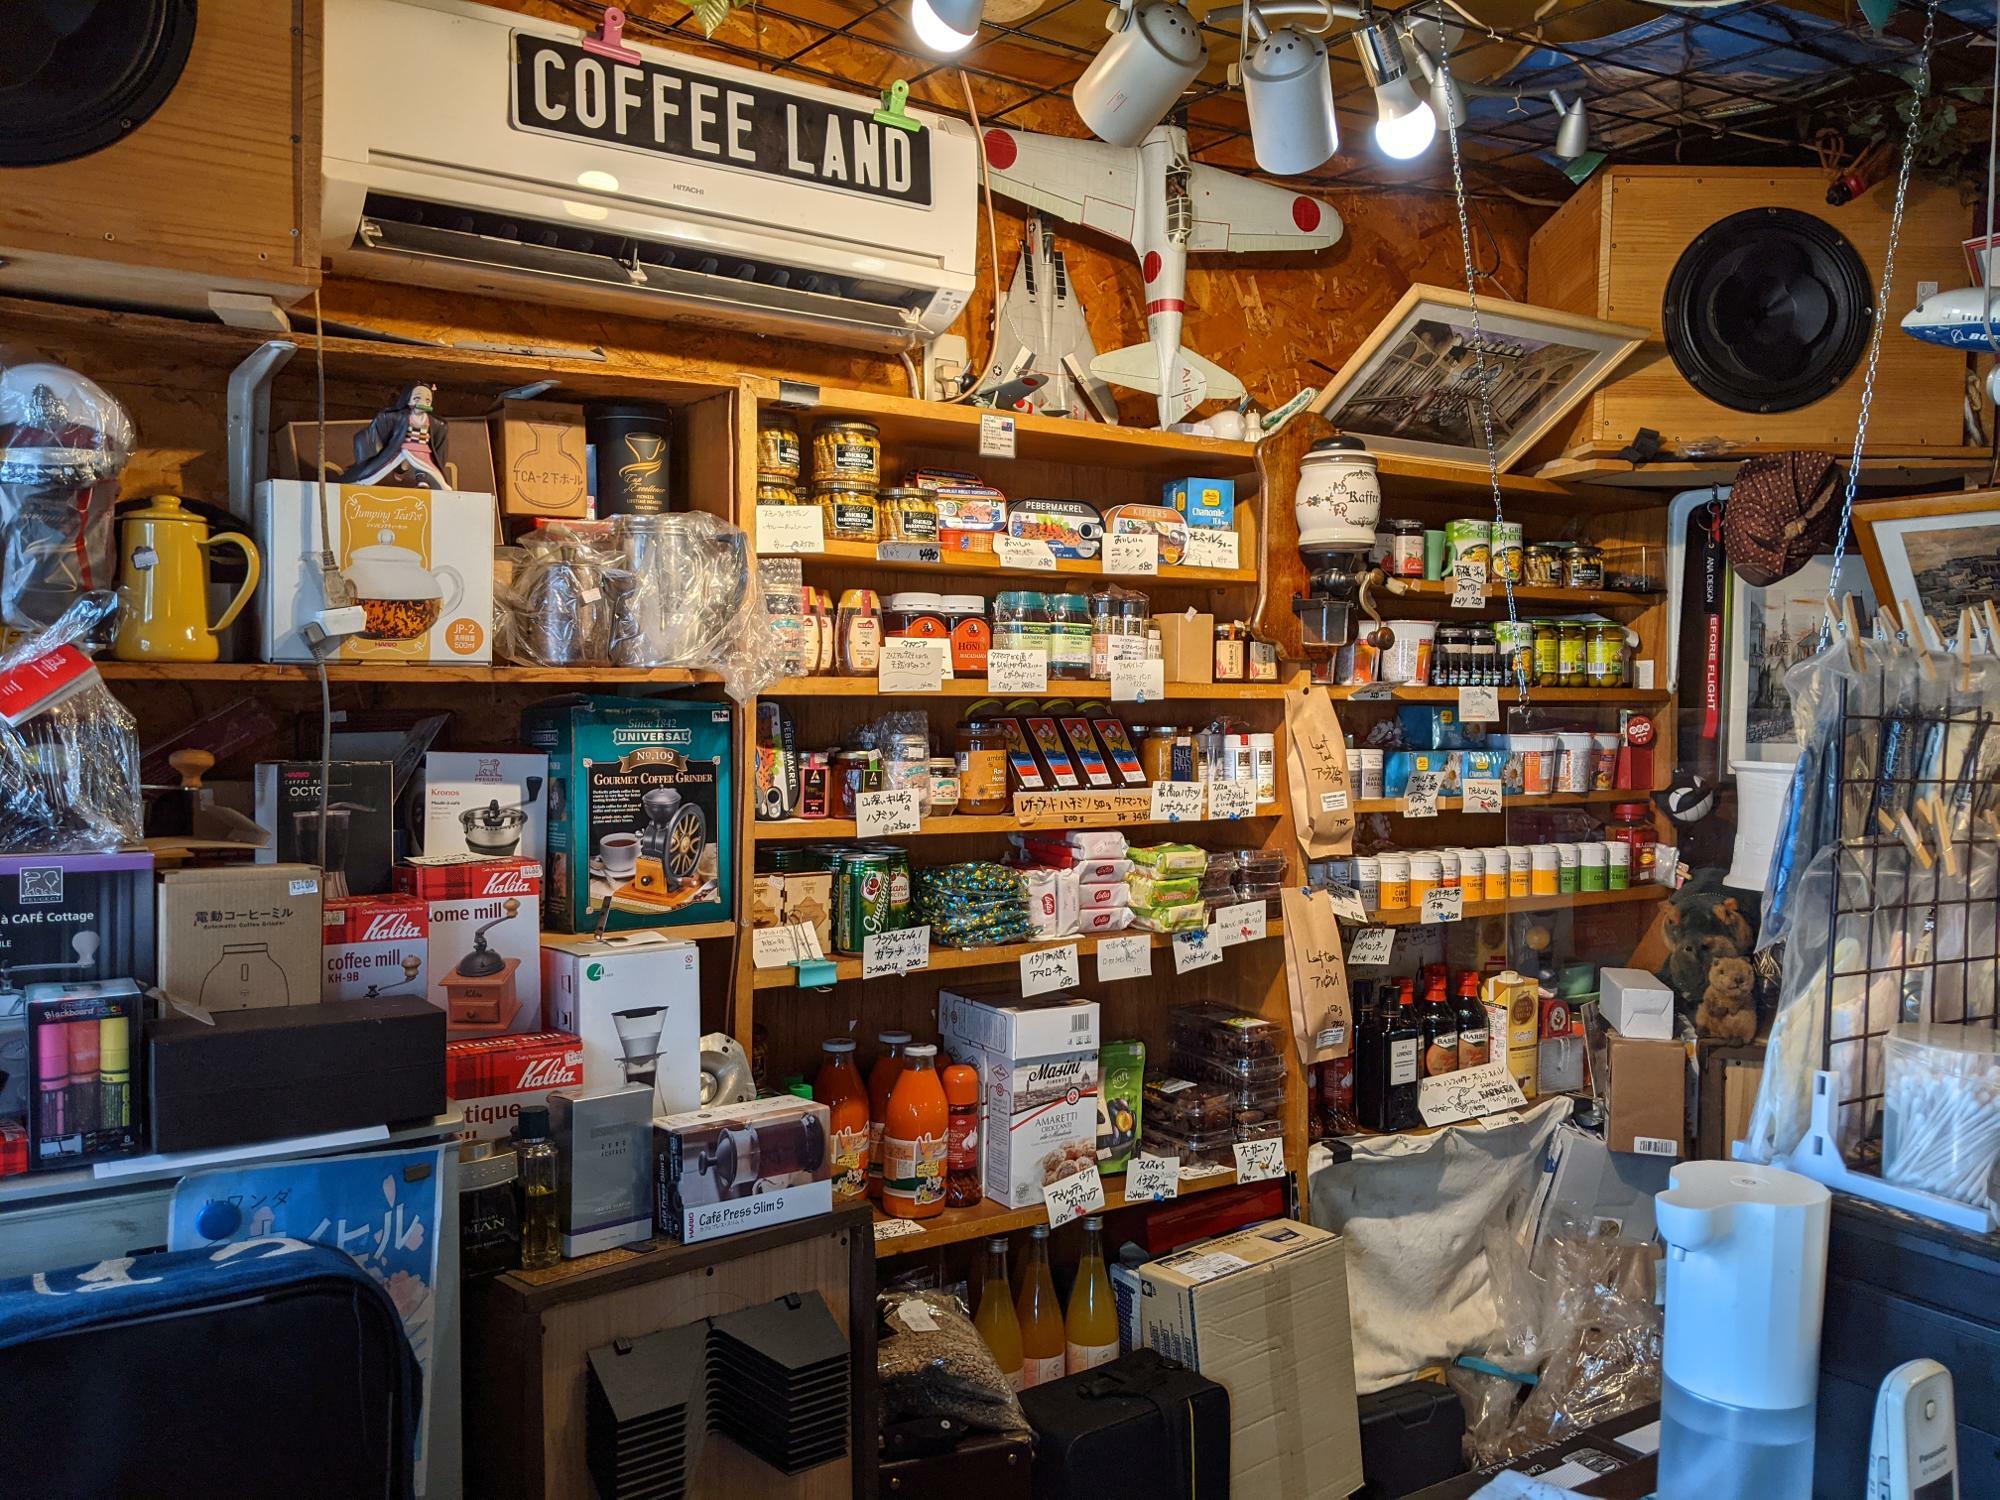 「COFFEE LAND」蜂蜜、スパイス、ハーブ、輸入菓子、コーヒーミルなどが並ぶ店内